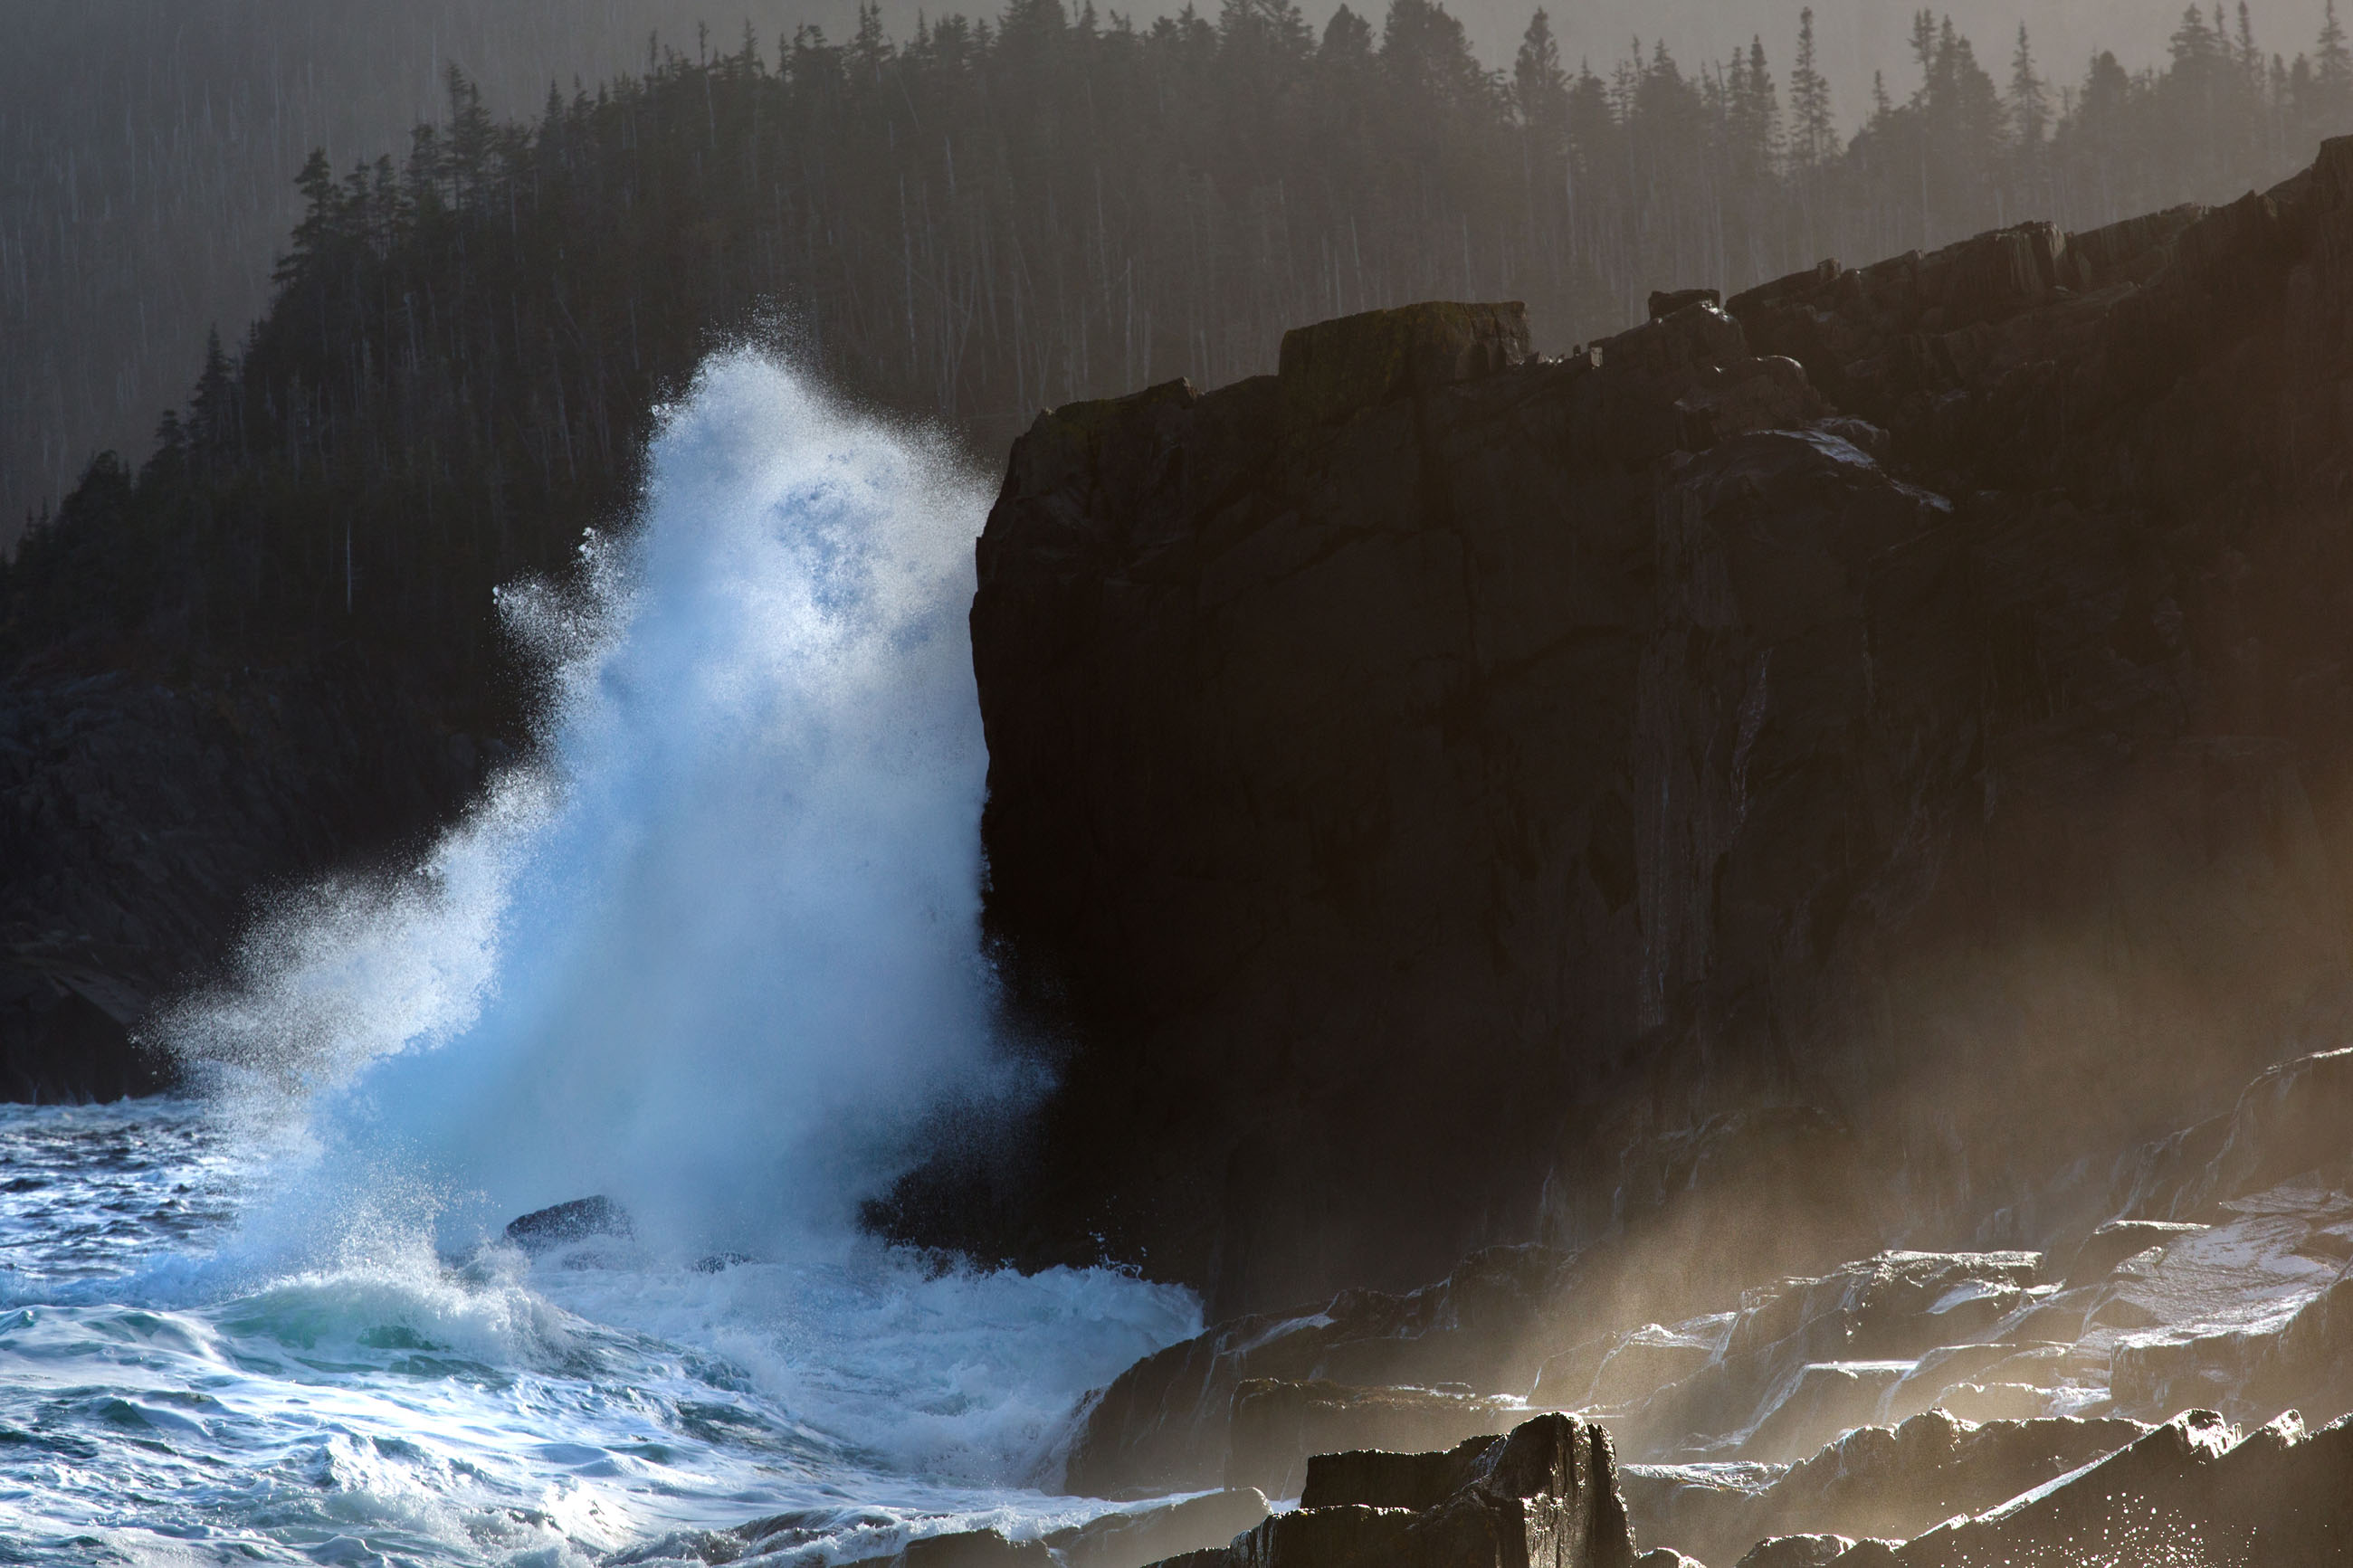 Large waves crashing on shoreline photo